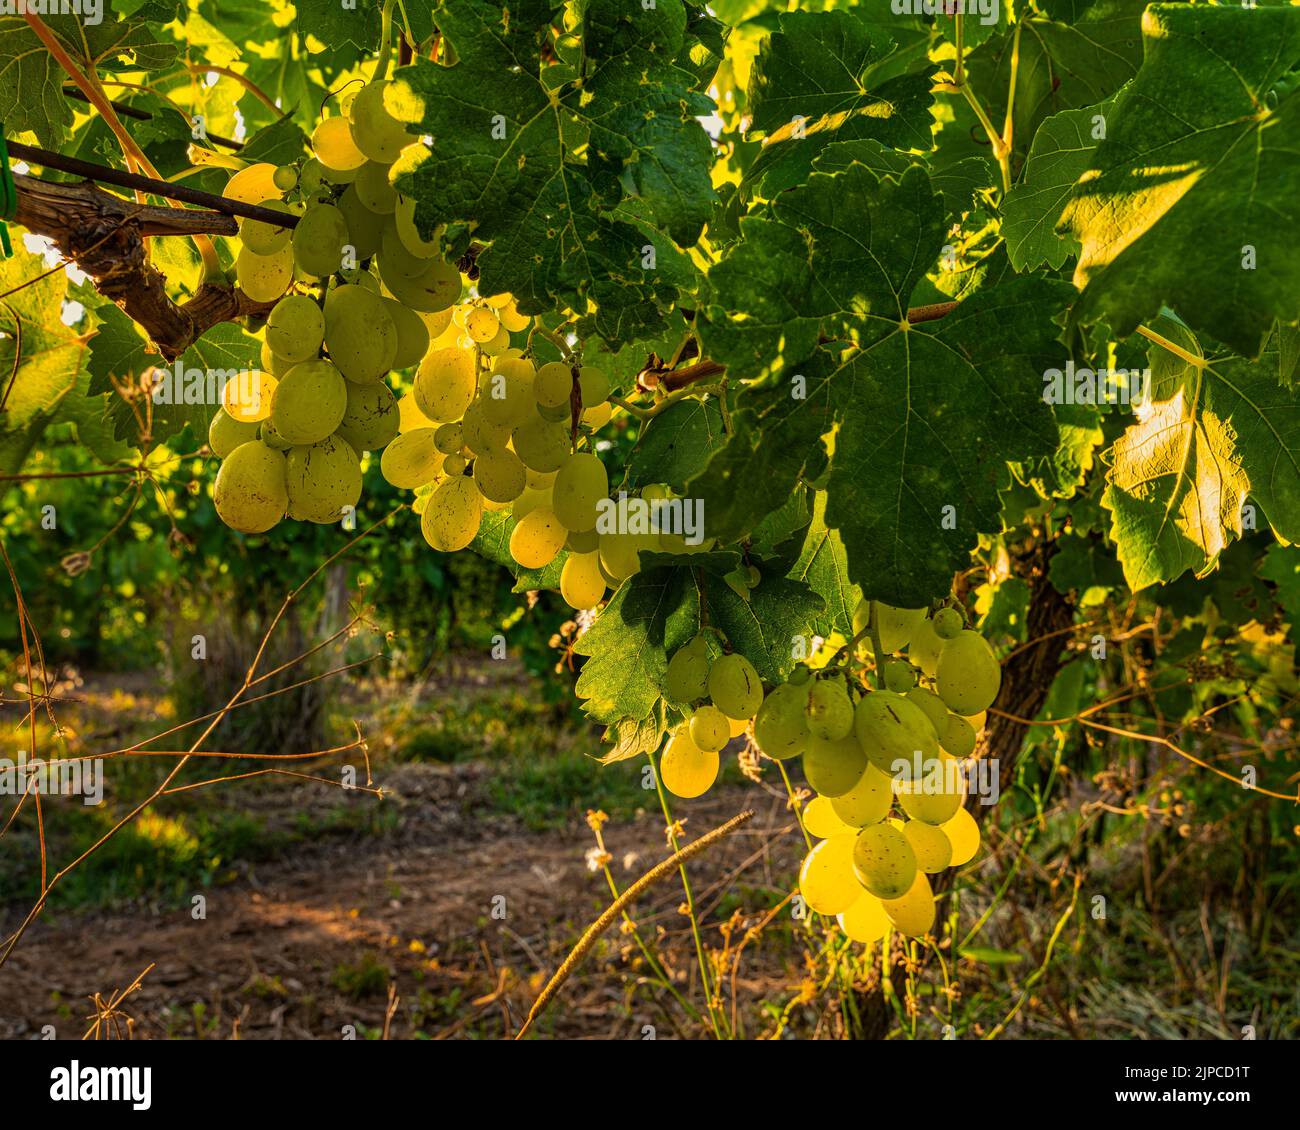 L'Italia Bianco d'uva con frutti di bosco grandi, dorati e succosi, dal sapore decisamente dolce, è un frutto ricco di proprietà antiossidanti. Abruzzo, Italia Foto Stock